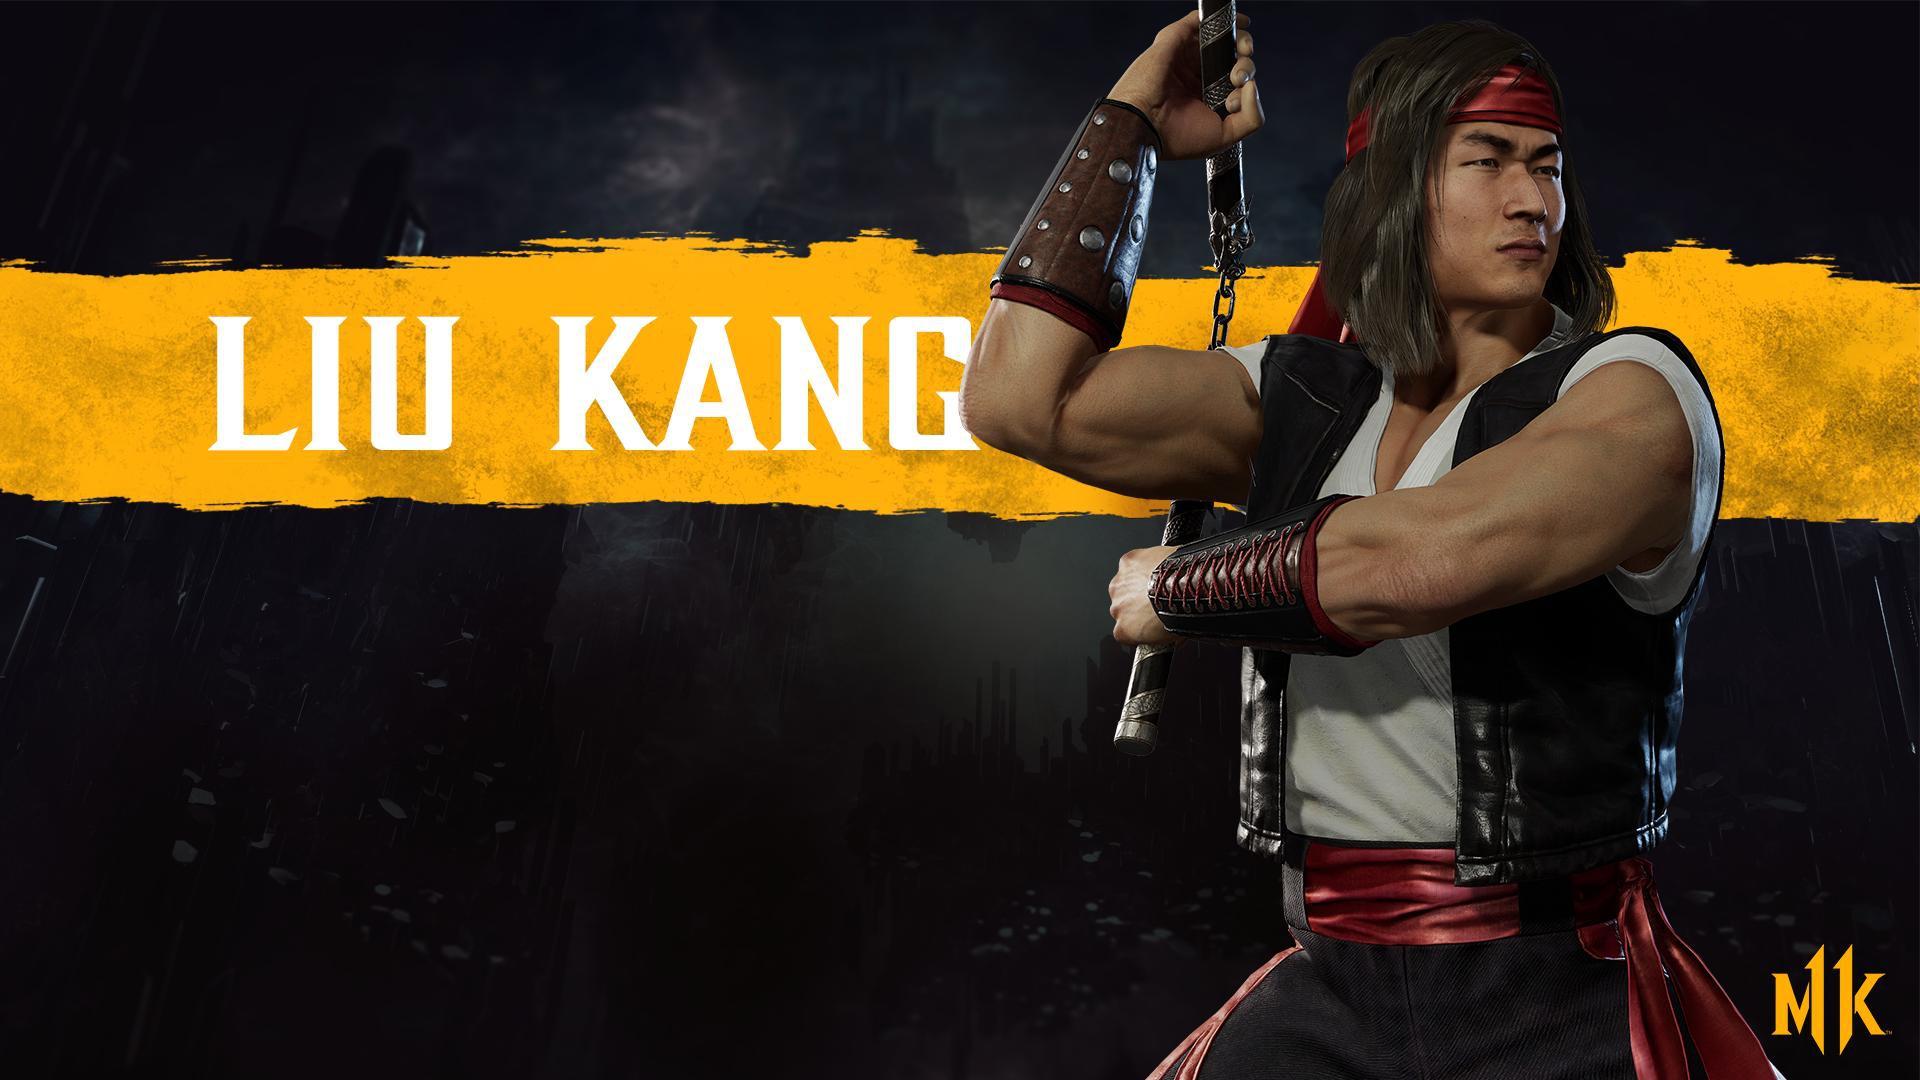 Wallpaper of Liu Kang, Mortal Kombat Video Game